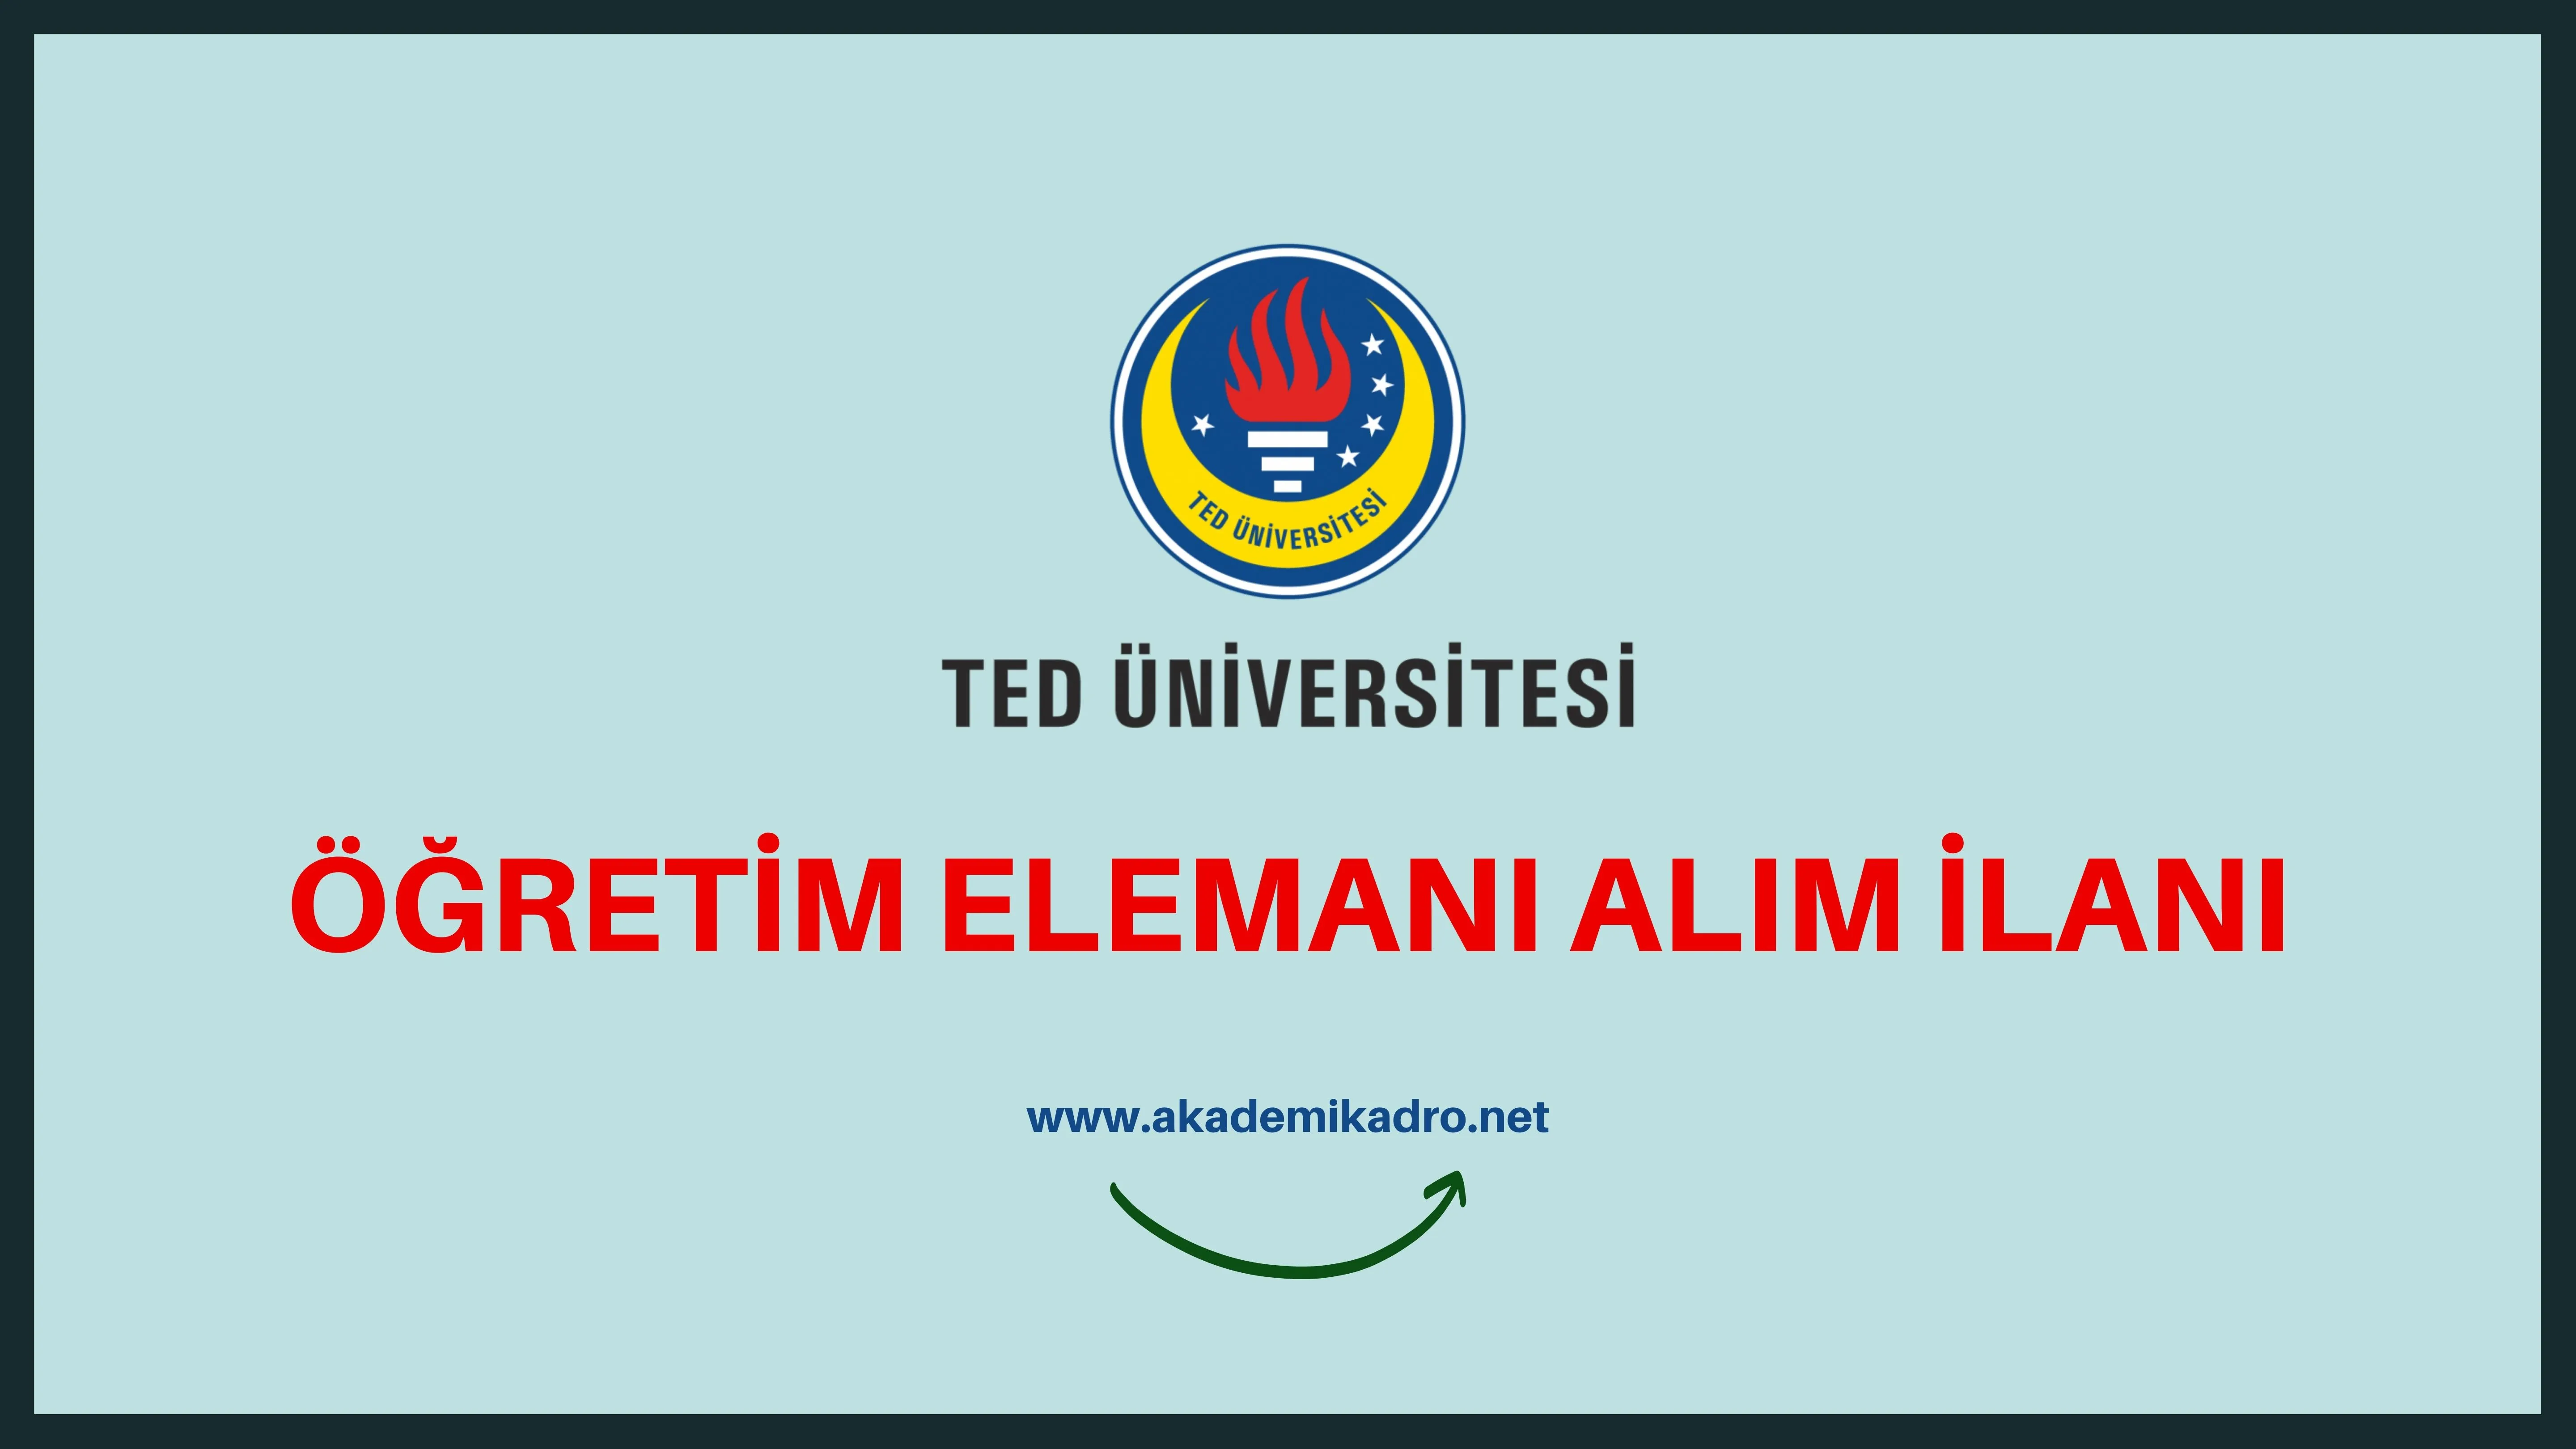 TED Üniversitesi 8 öğretim üyesi ve 3 Öğretim görevlisi alacaktır.